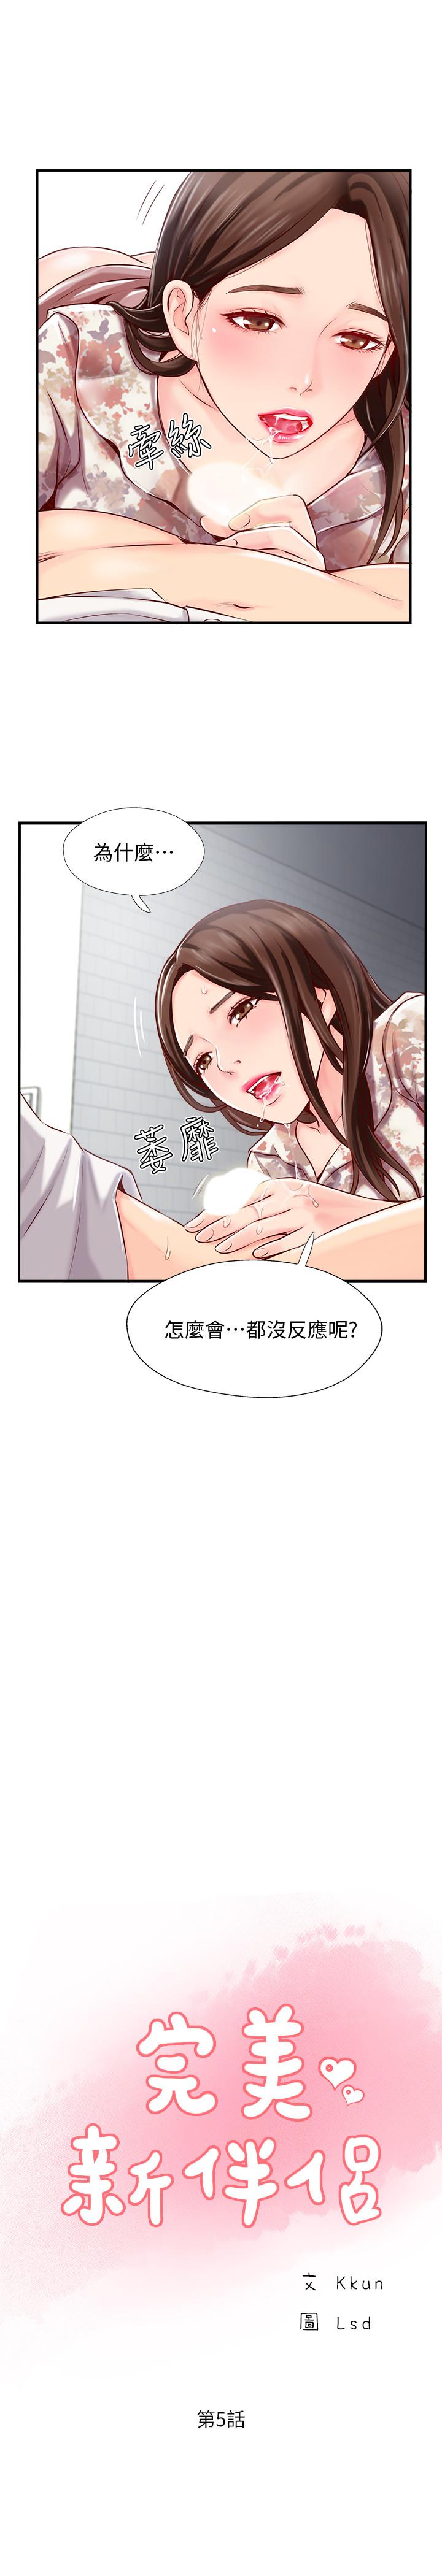 韩国污漫画 完美新伴侶 第5话-那晚在磨铁发生的事 9